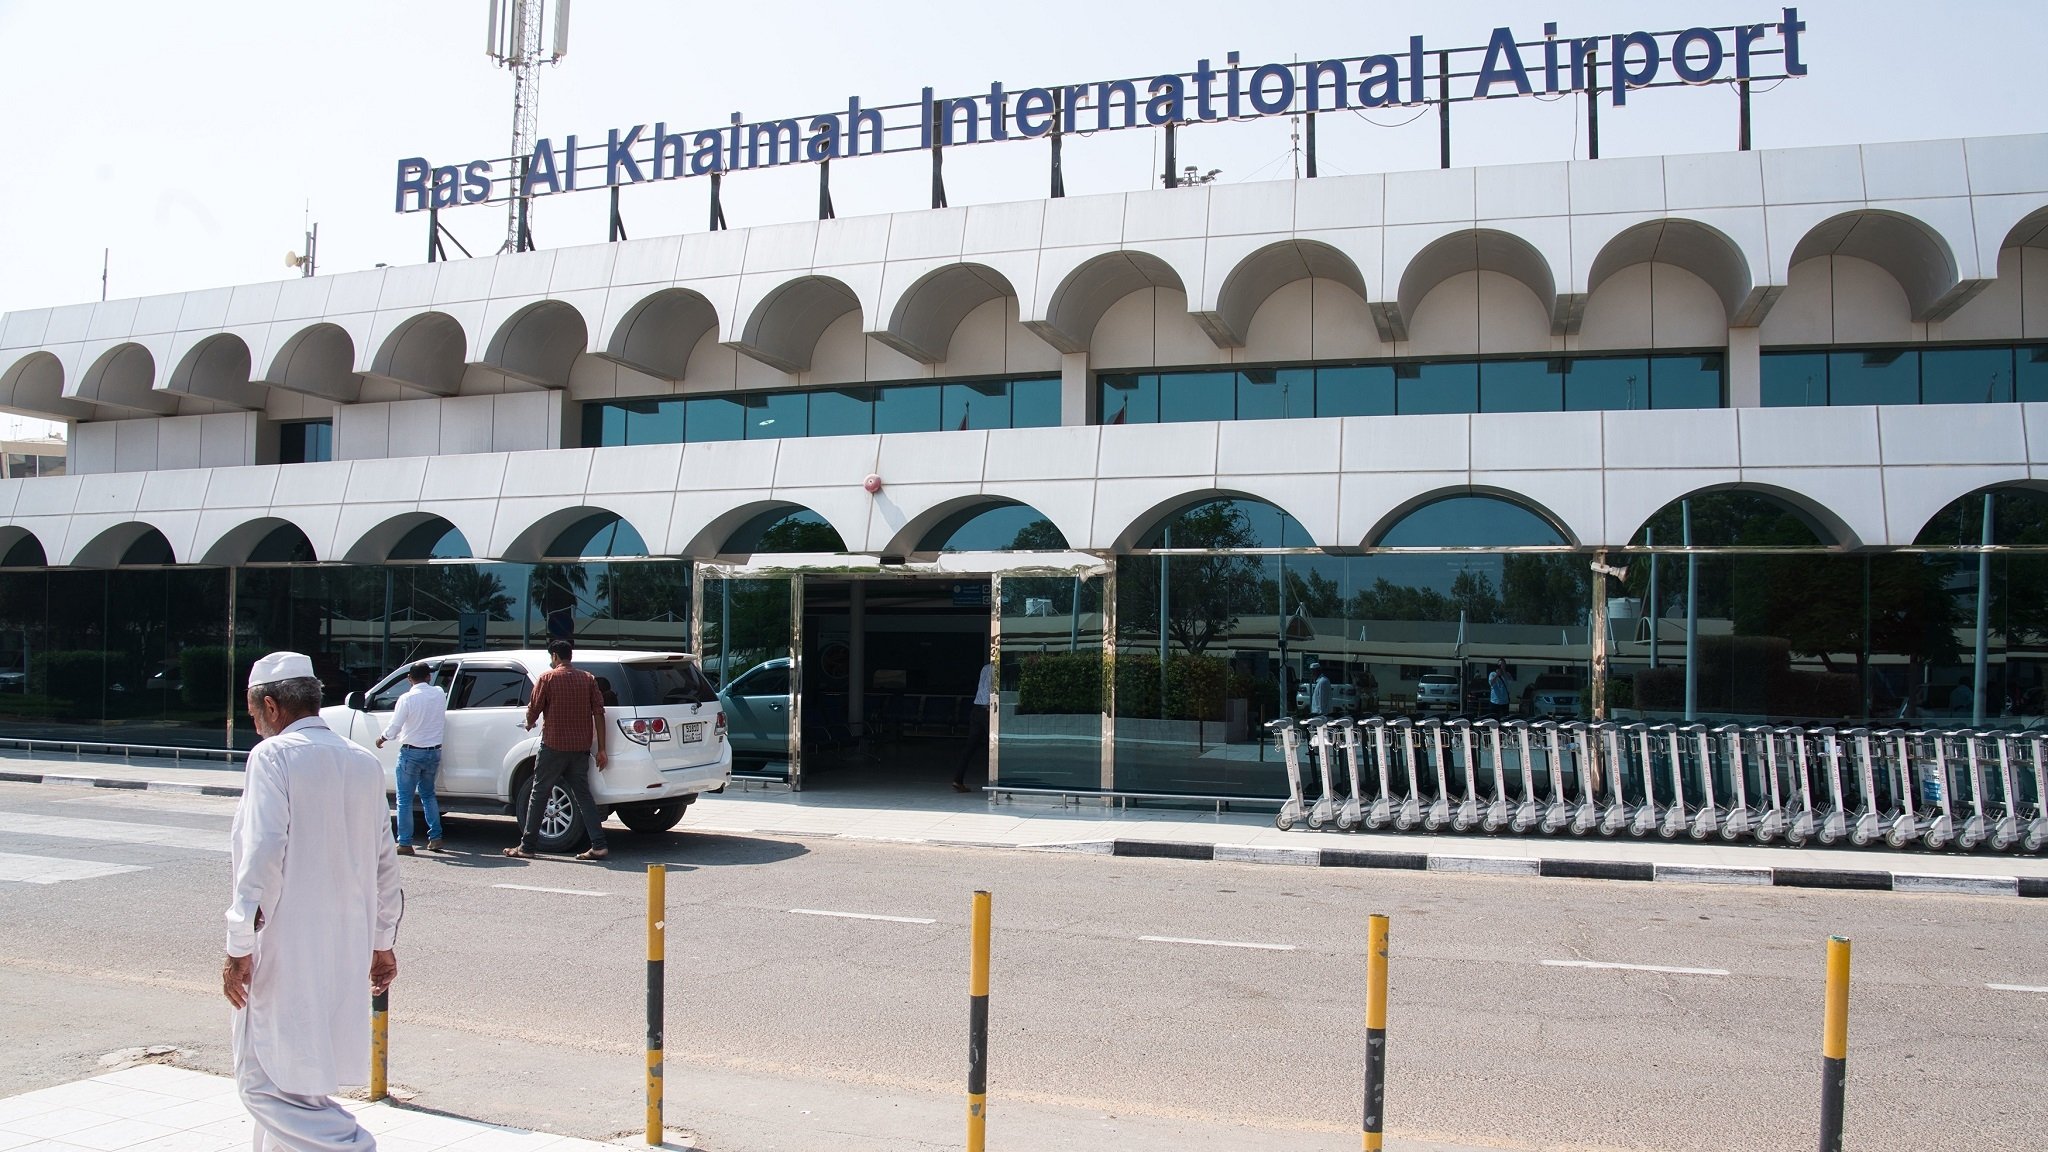 Ras Al Khaimah Airport